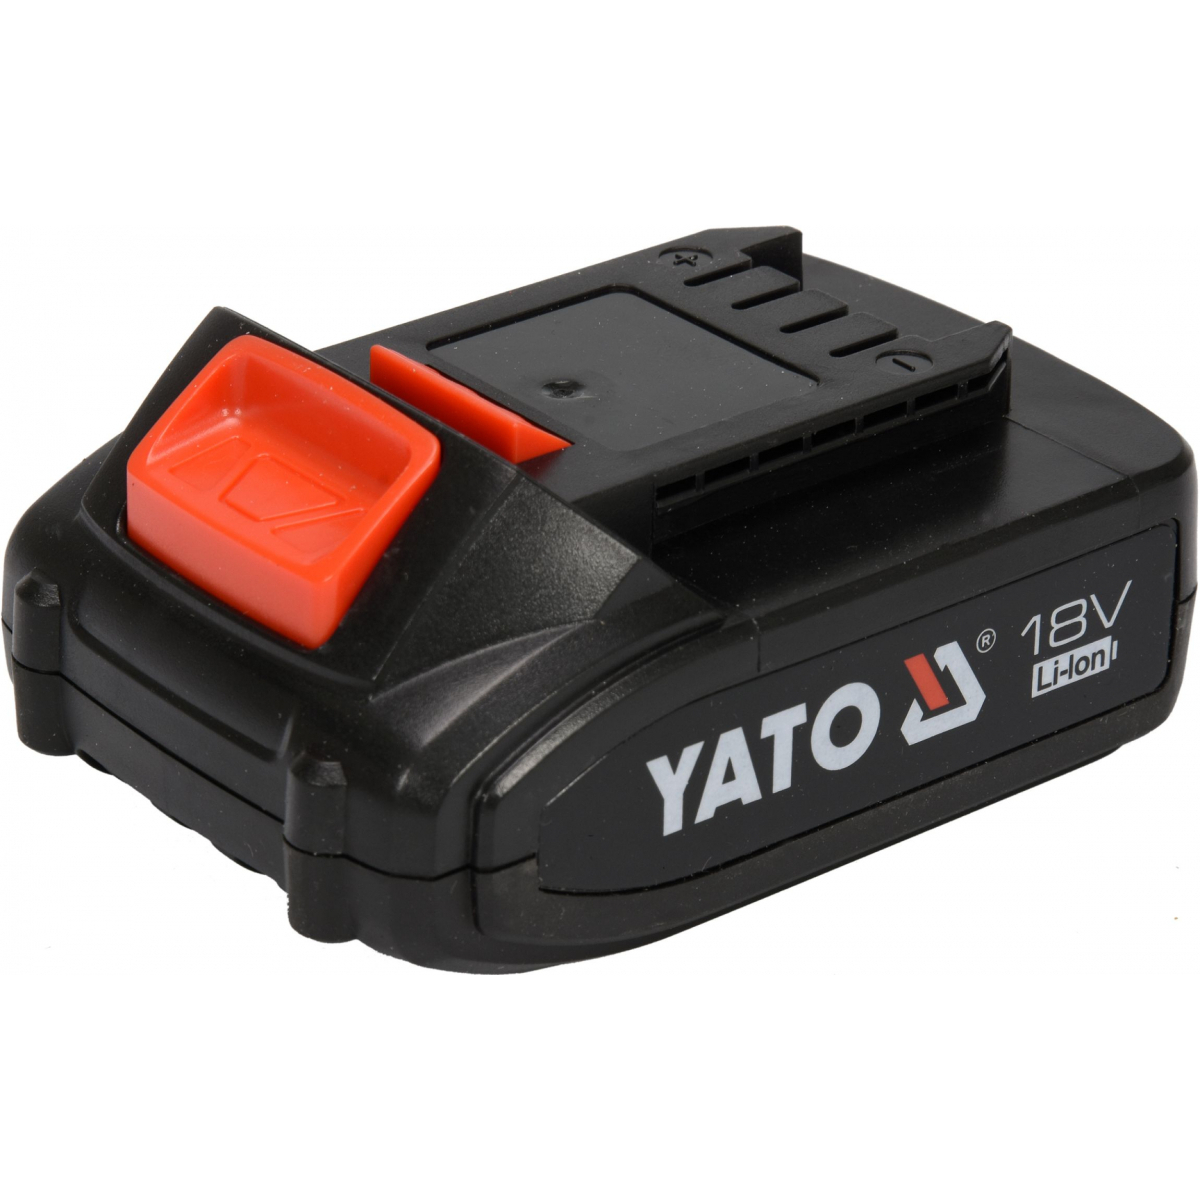 Yato Baterie náhradní 18V Li-ion 2,0 AH (YT-82782, YT-82788,YT-82826,YT-82804)